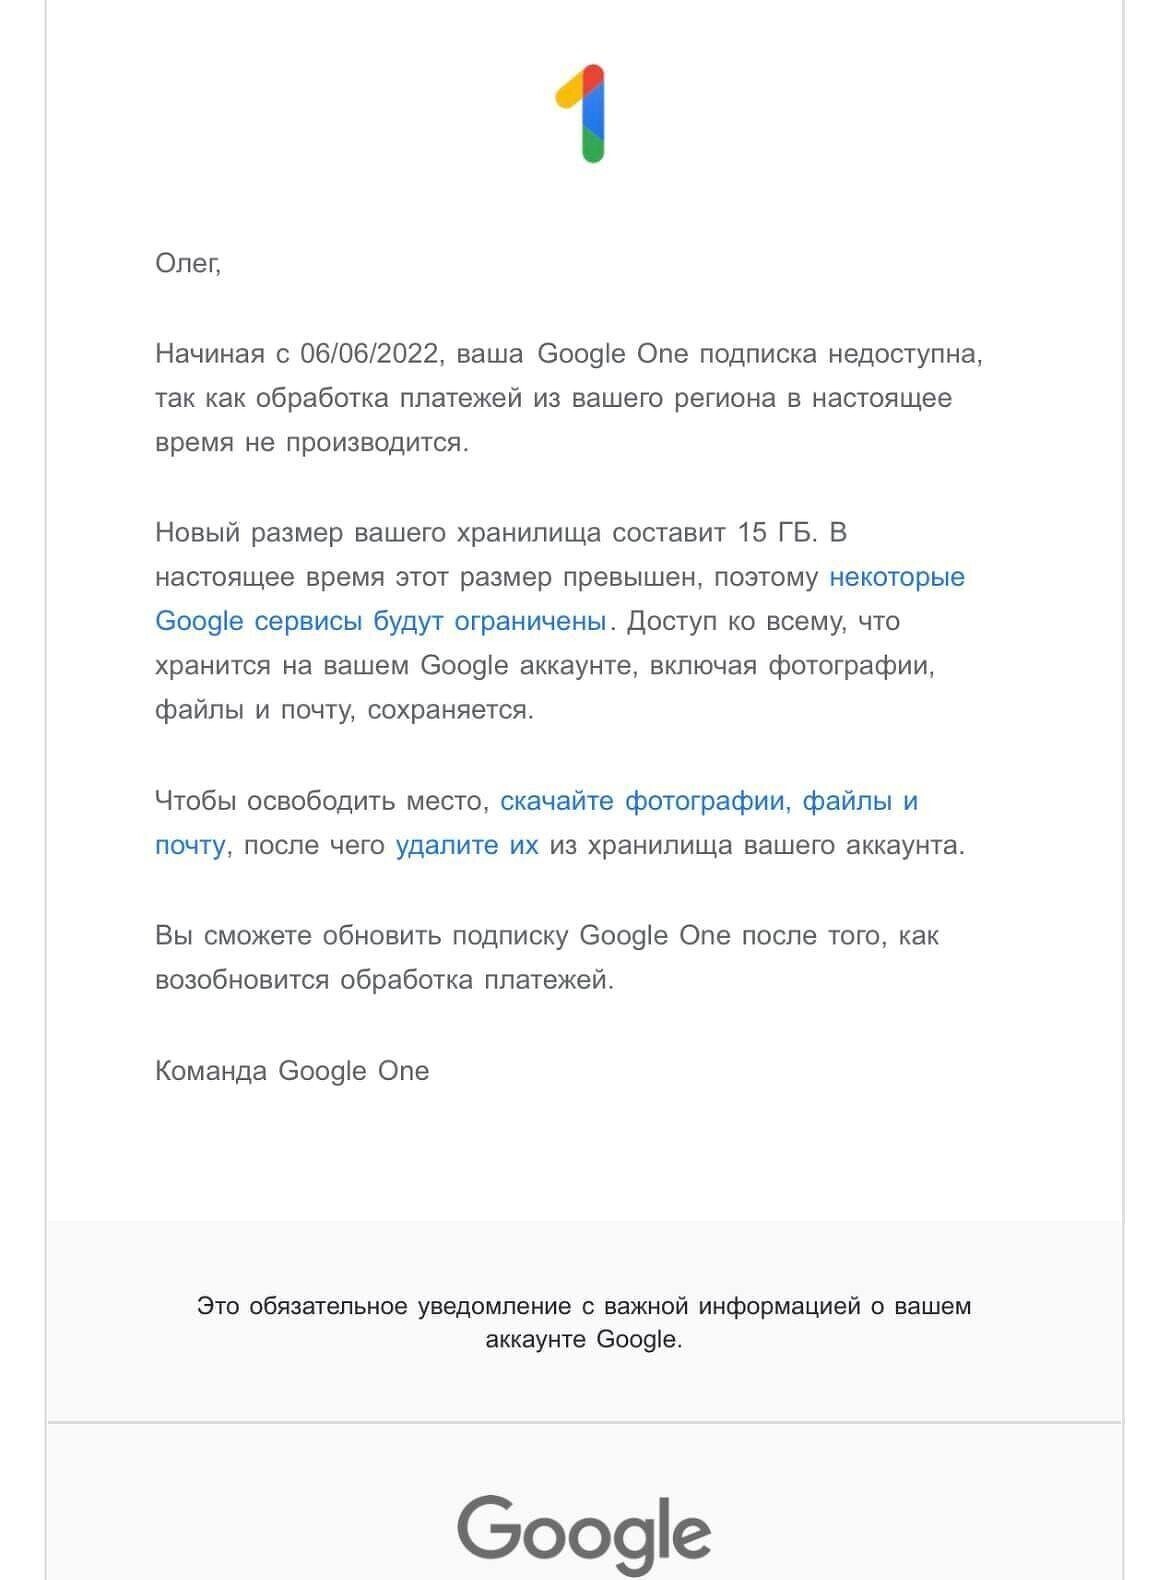 Google безжалостно отбирает у россиян платную подписку на дополнительные гигабайты